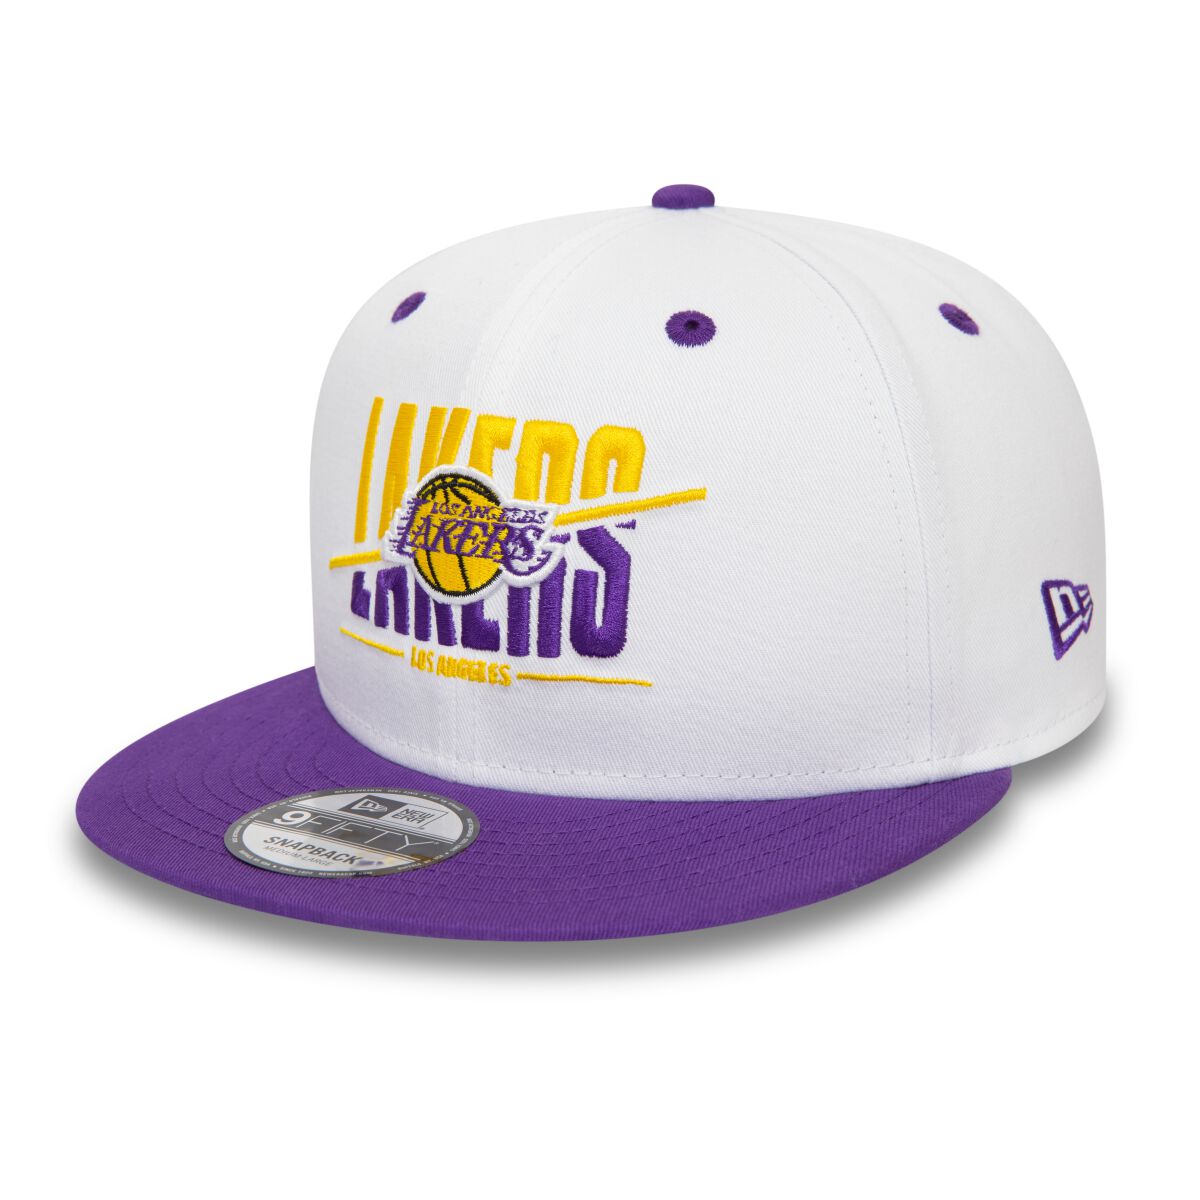 New Era - NBA - White Crown - LA Lakers - Cap - multicolor